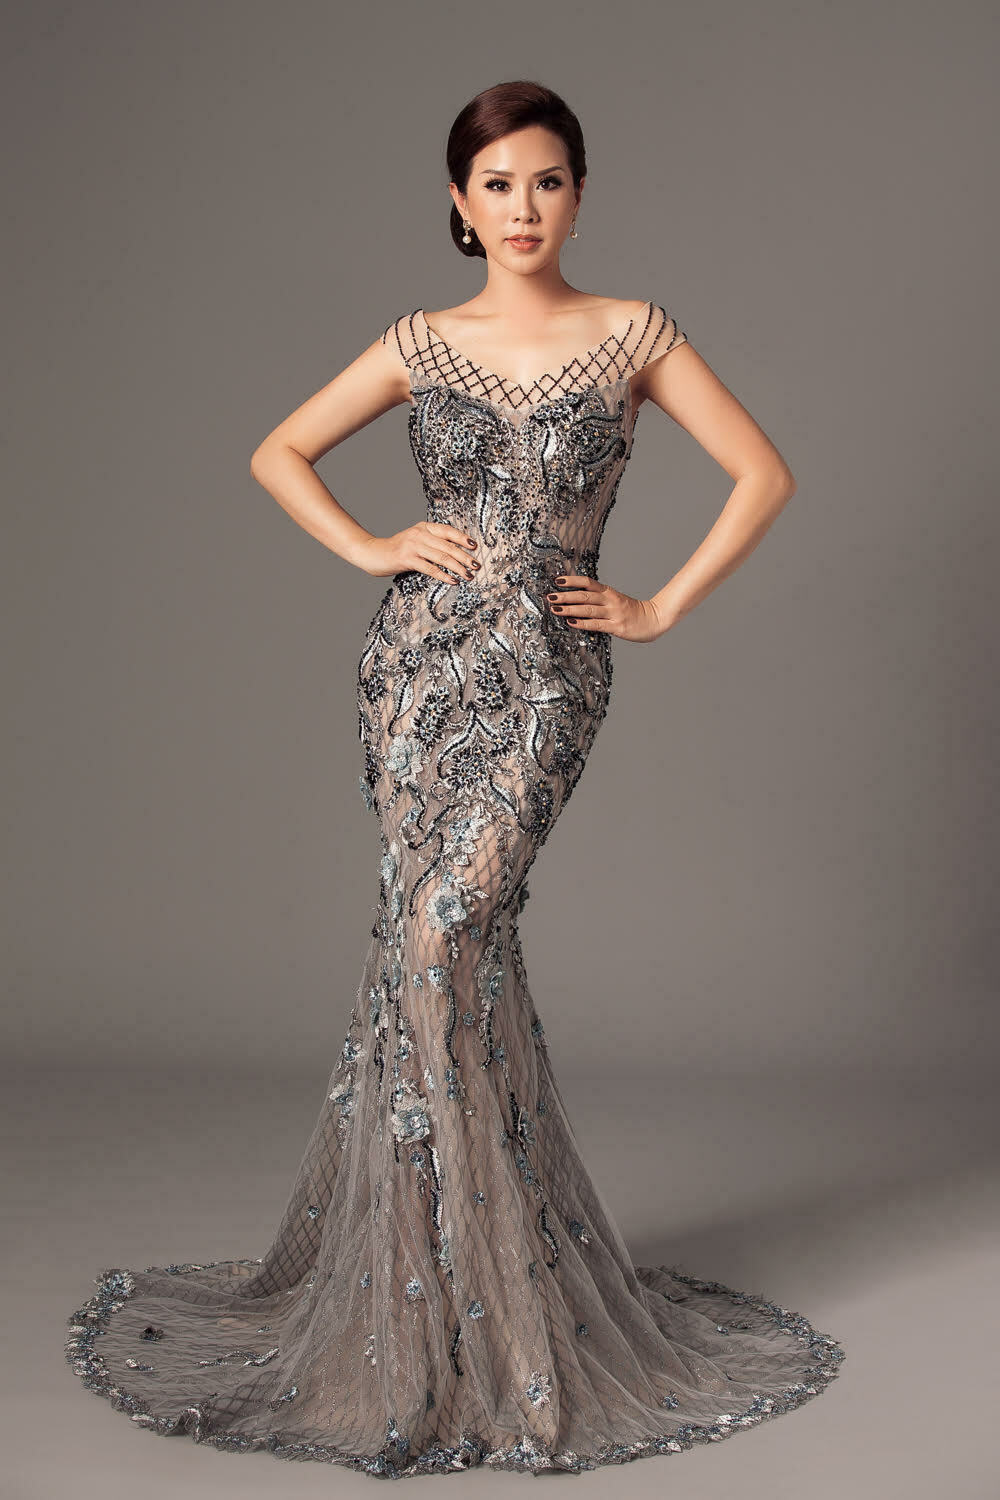 Hoa hậu Thu Hoài khoe đường cong gợi cảm với váy đuôi cá